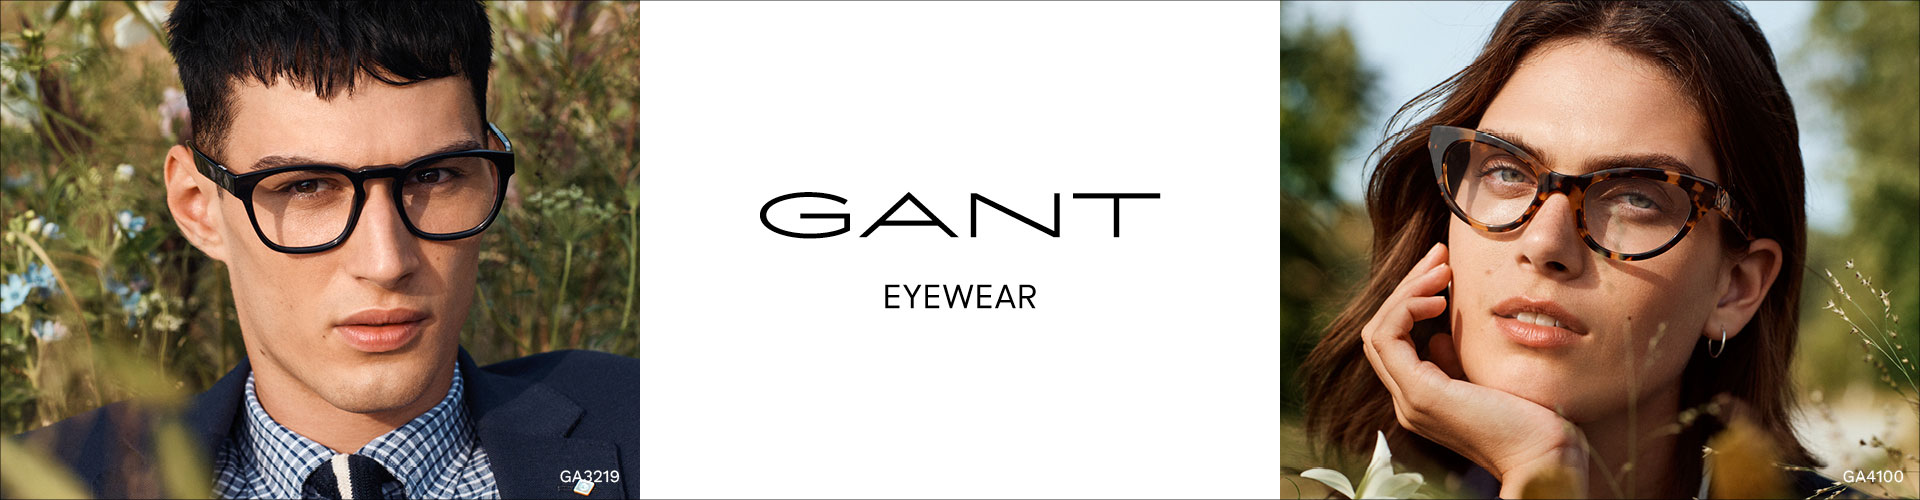 Gant® Eyeglasses | FramesDirect.com